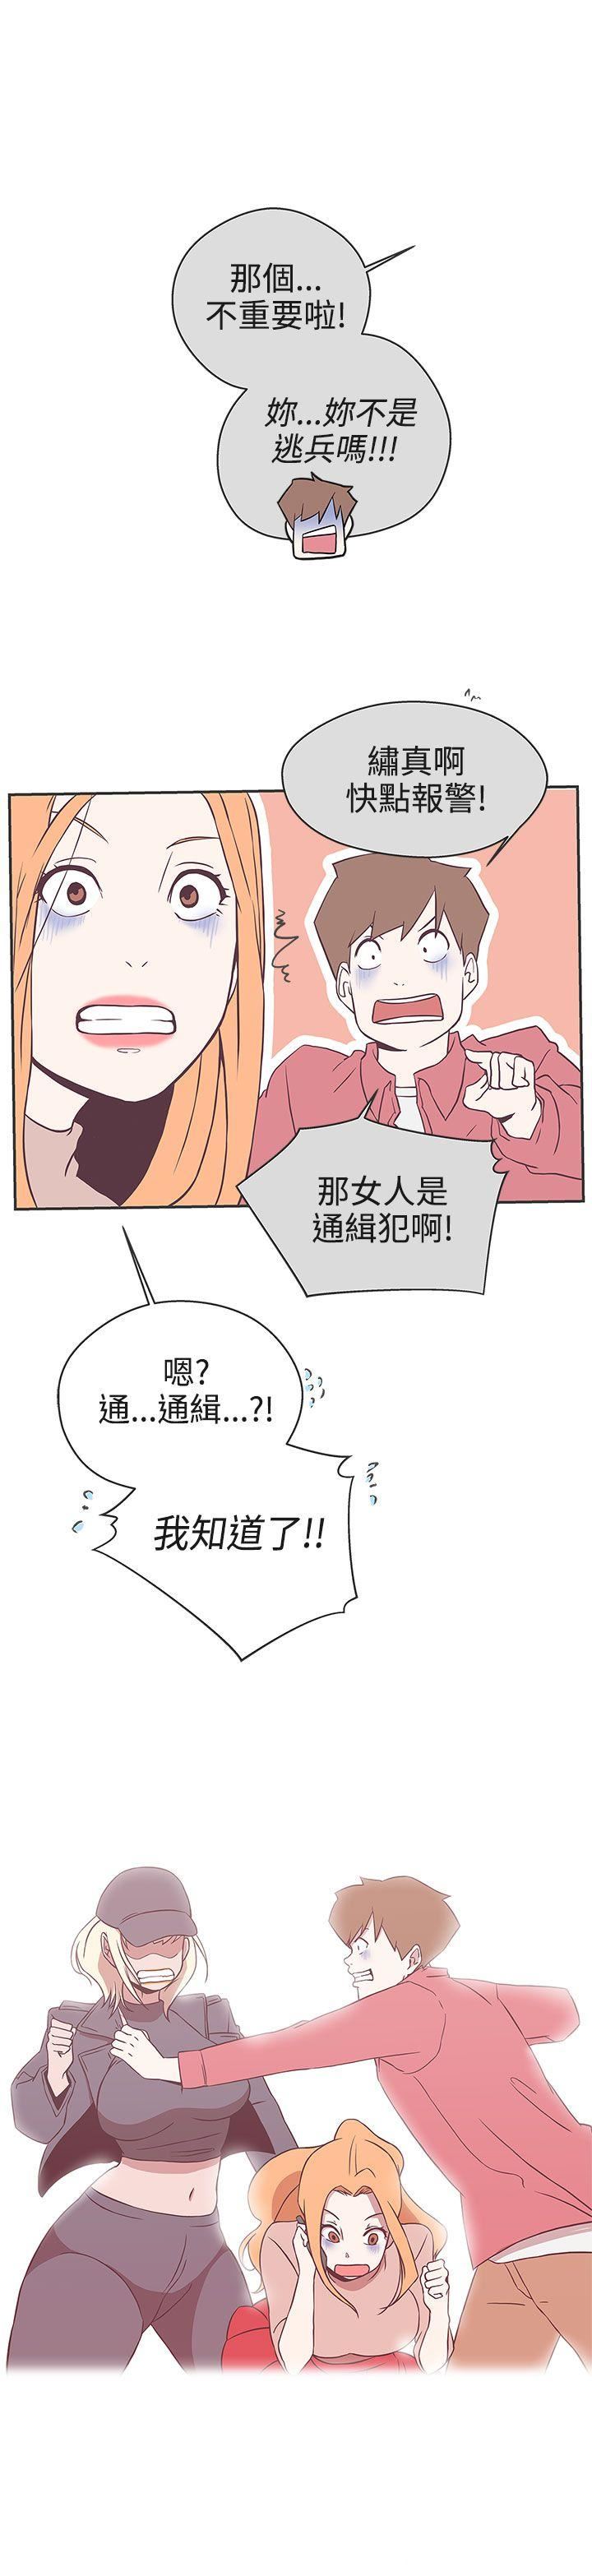 韩国污漫画 LOVE 愛的導航G 第19话 3